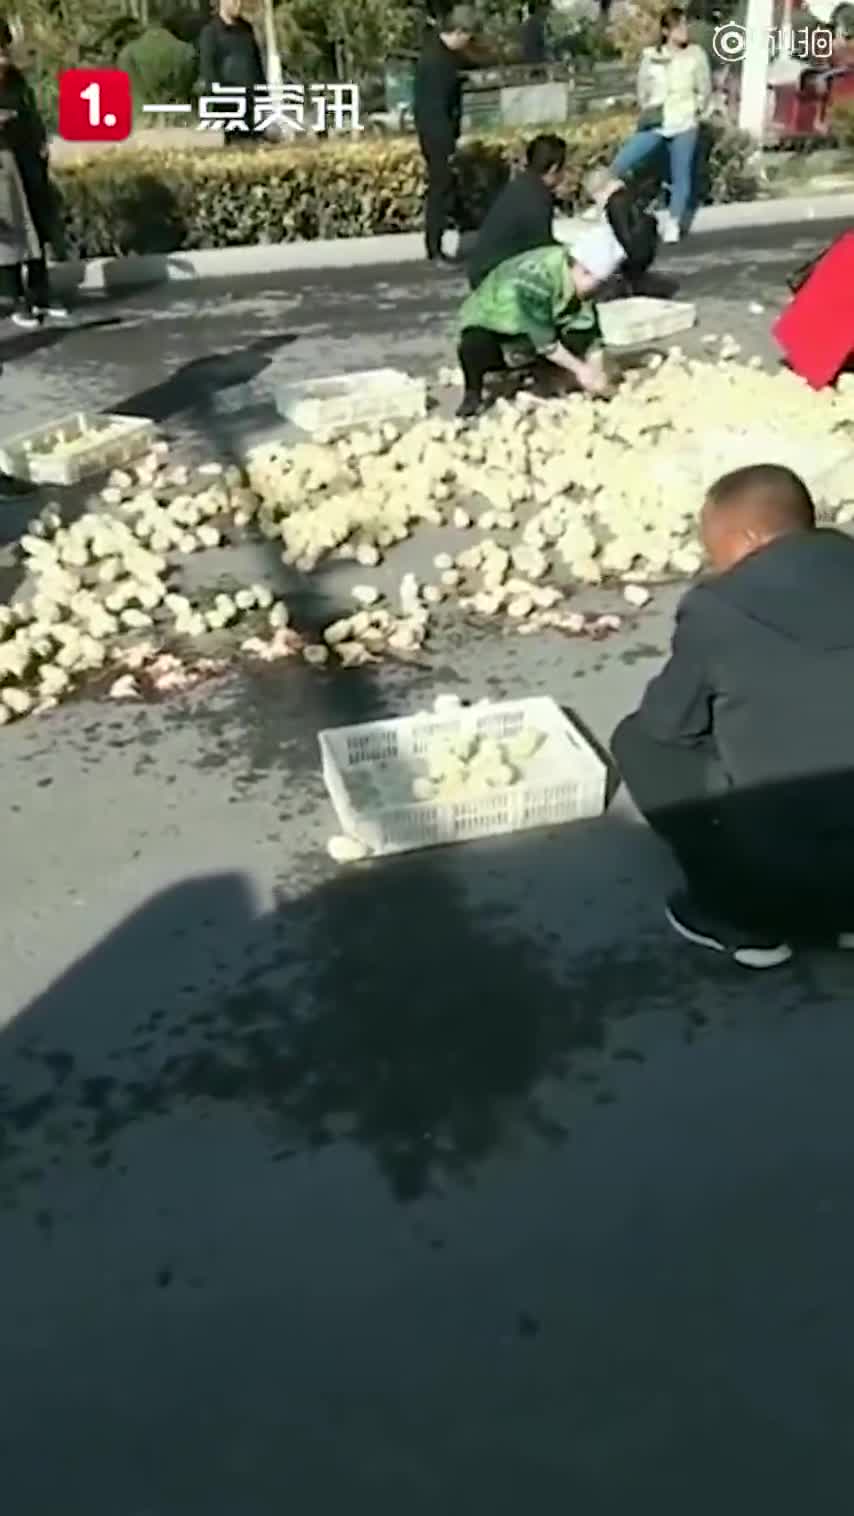 视频|宁夏货车甩出数百只小鸡 群众疯抢引争议